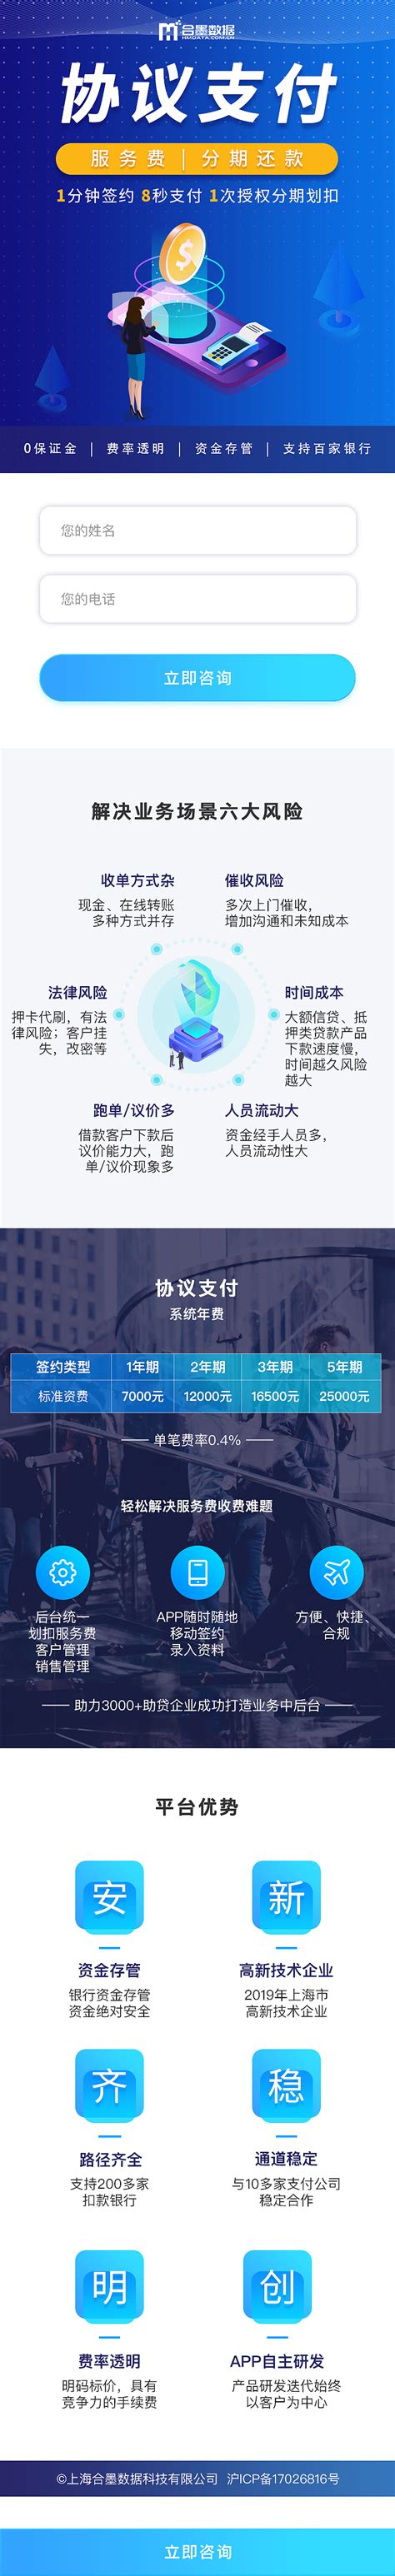 中国风河北记忆旅游宣传海报_红动网